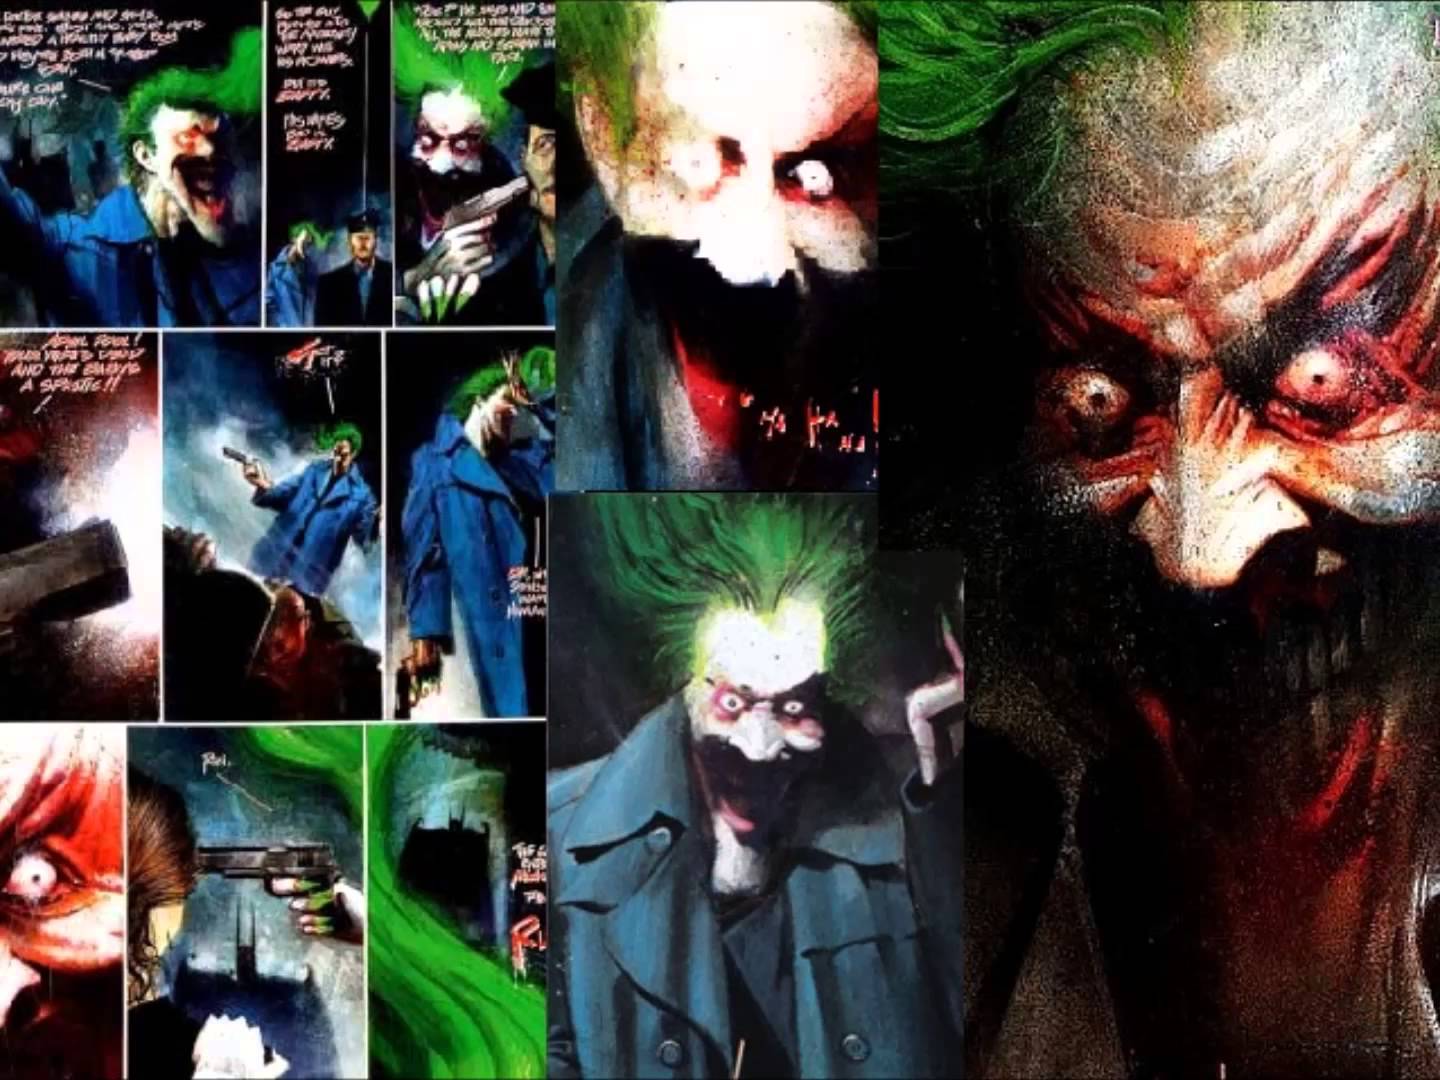 batman arkham asylum comic